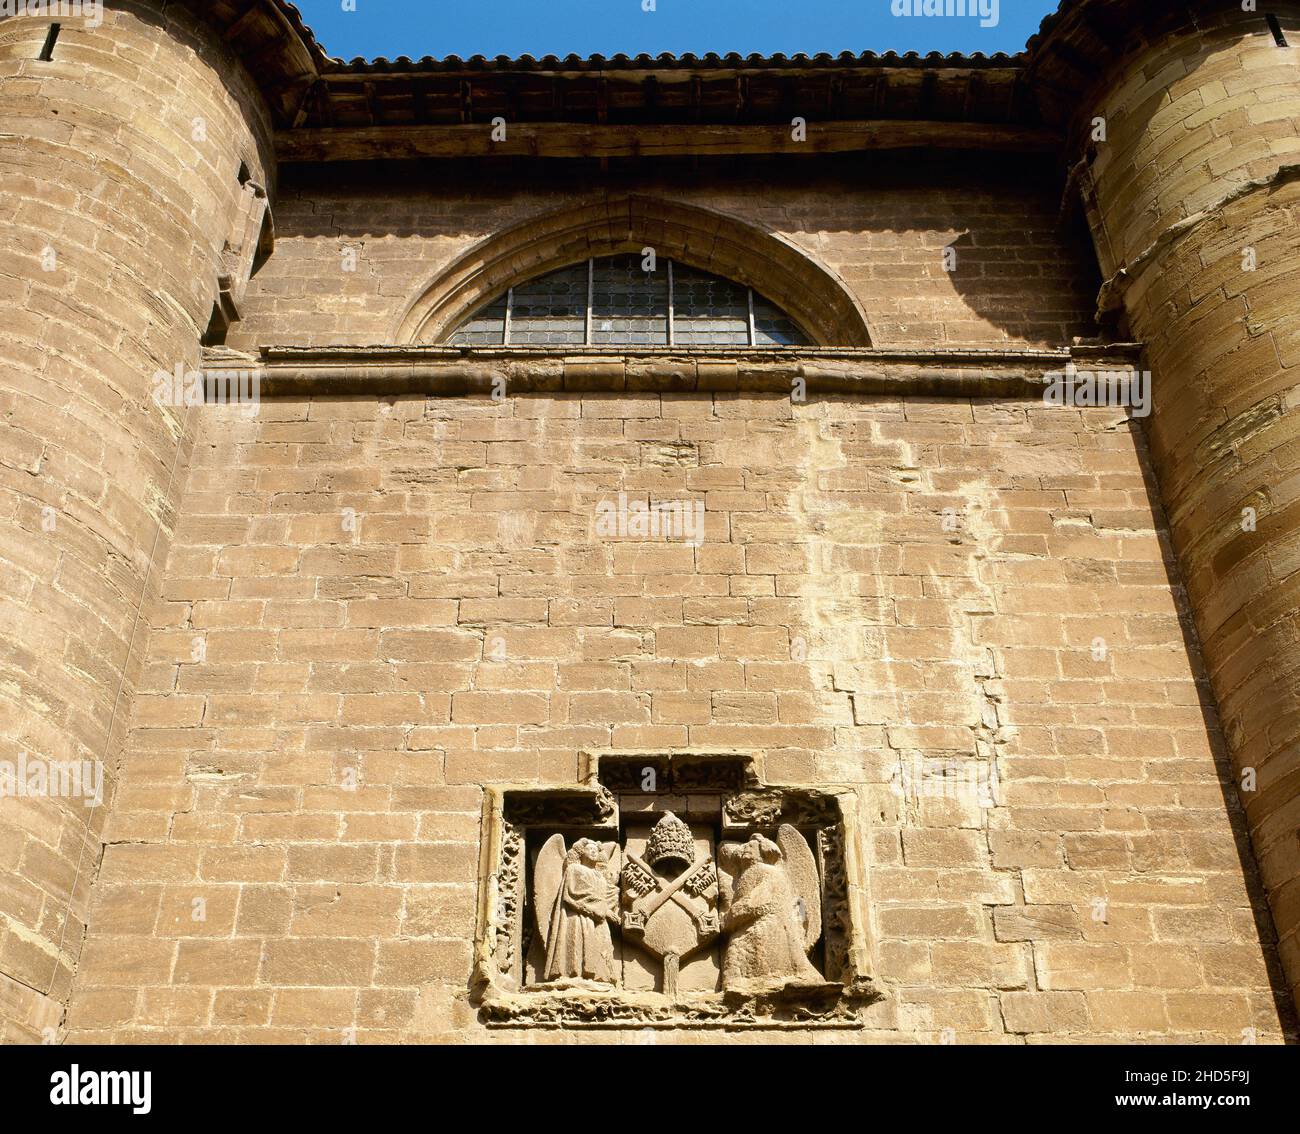 Espagne, la Rioja, Nájera.Monastère de Santa María la Real.Fondé par le roi García Sánchez III 'el de Nájera' (celui de Nájera) et sa femme Stephanie de Foix, qui en a commandé la construction en 1052.Détail architectural extérieur de l'église, entre les contreforts du transept, avec une couche papale d'armes sculptées en pierre appartenant au pontife vénitien Eugenius IV (1431-1447).L'église gothique actuelle date du 15th siècle. Banque D'Images